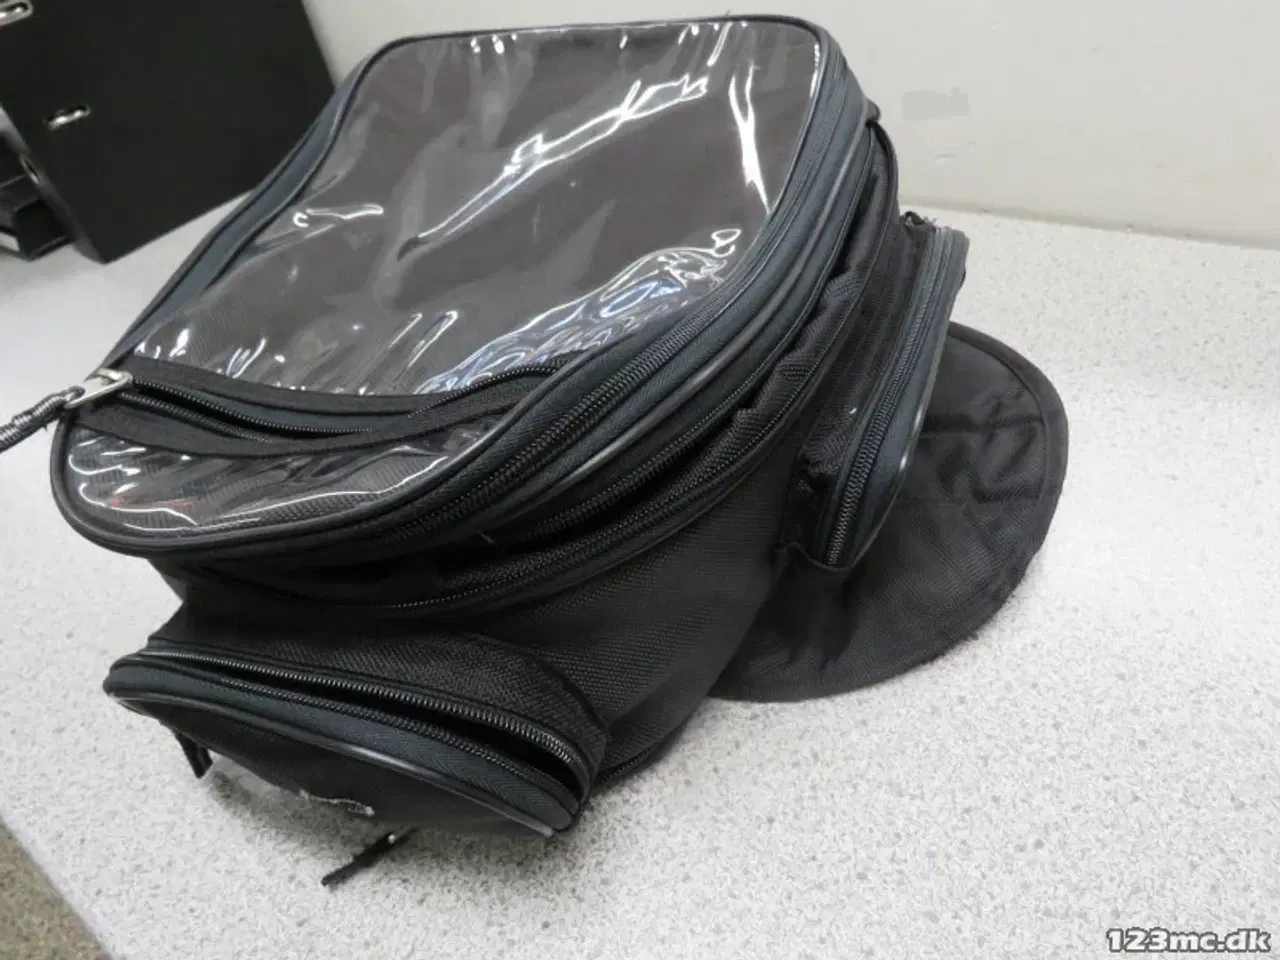 Billede 1 - Tanktaske med mange lommer, magneter og regnslag.